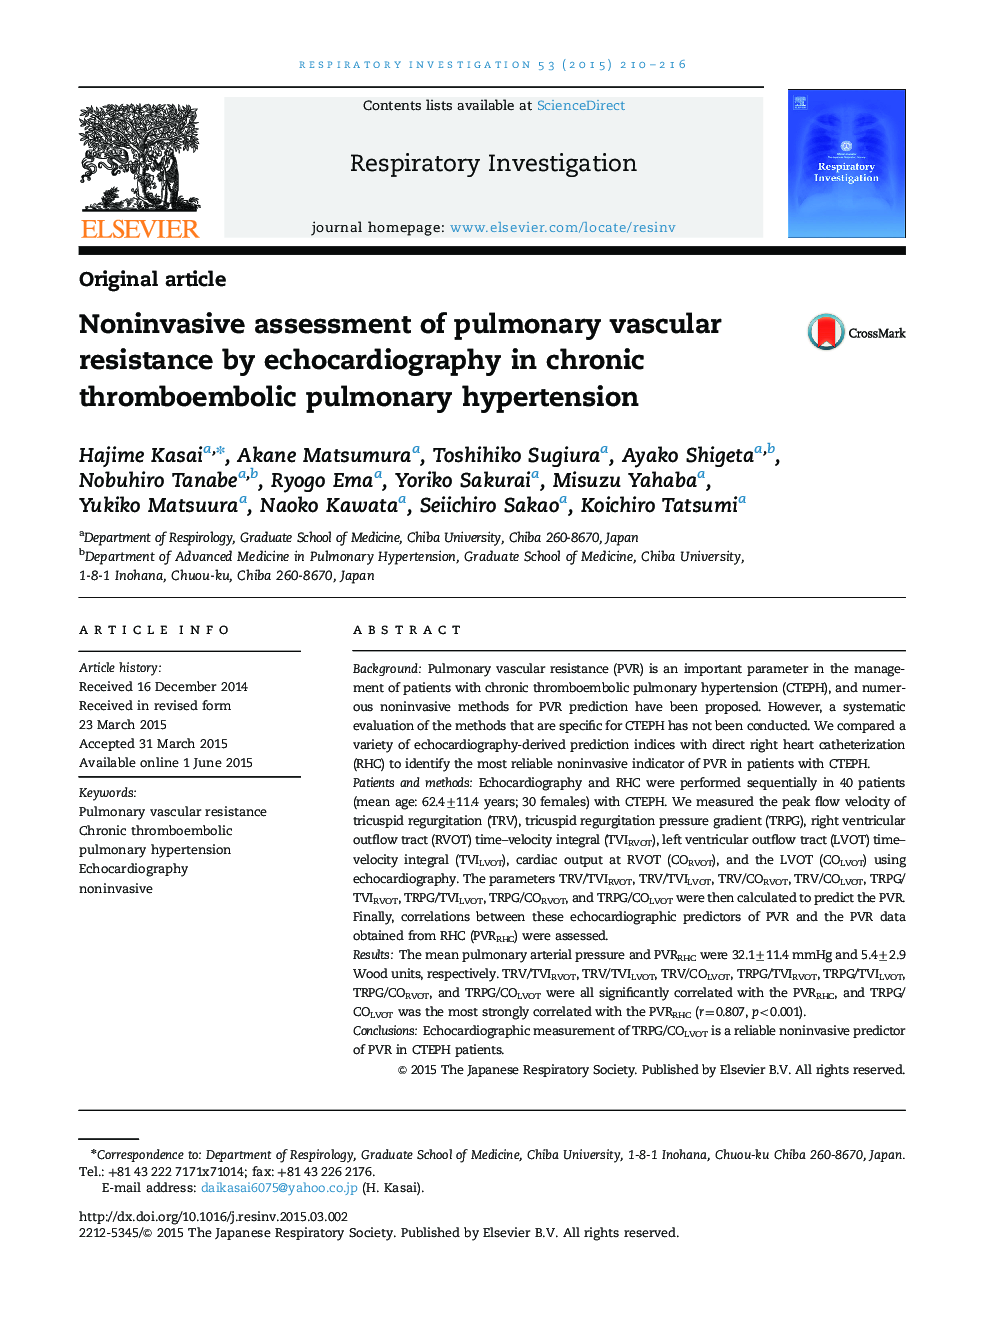 ارزیابی غیرتهاجمی از مقاومت عروقی ریوی توسط اکوکاردیوگرافی در فشار خون بالا ترومبوآمبولیک ریوی 